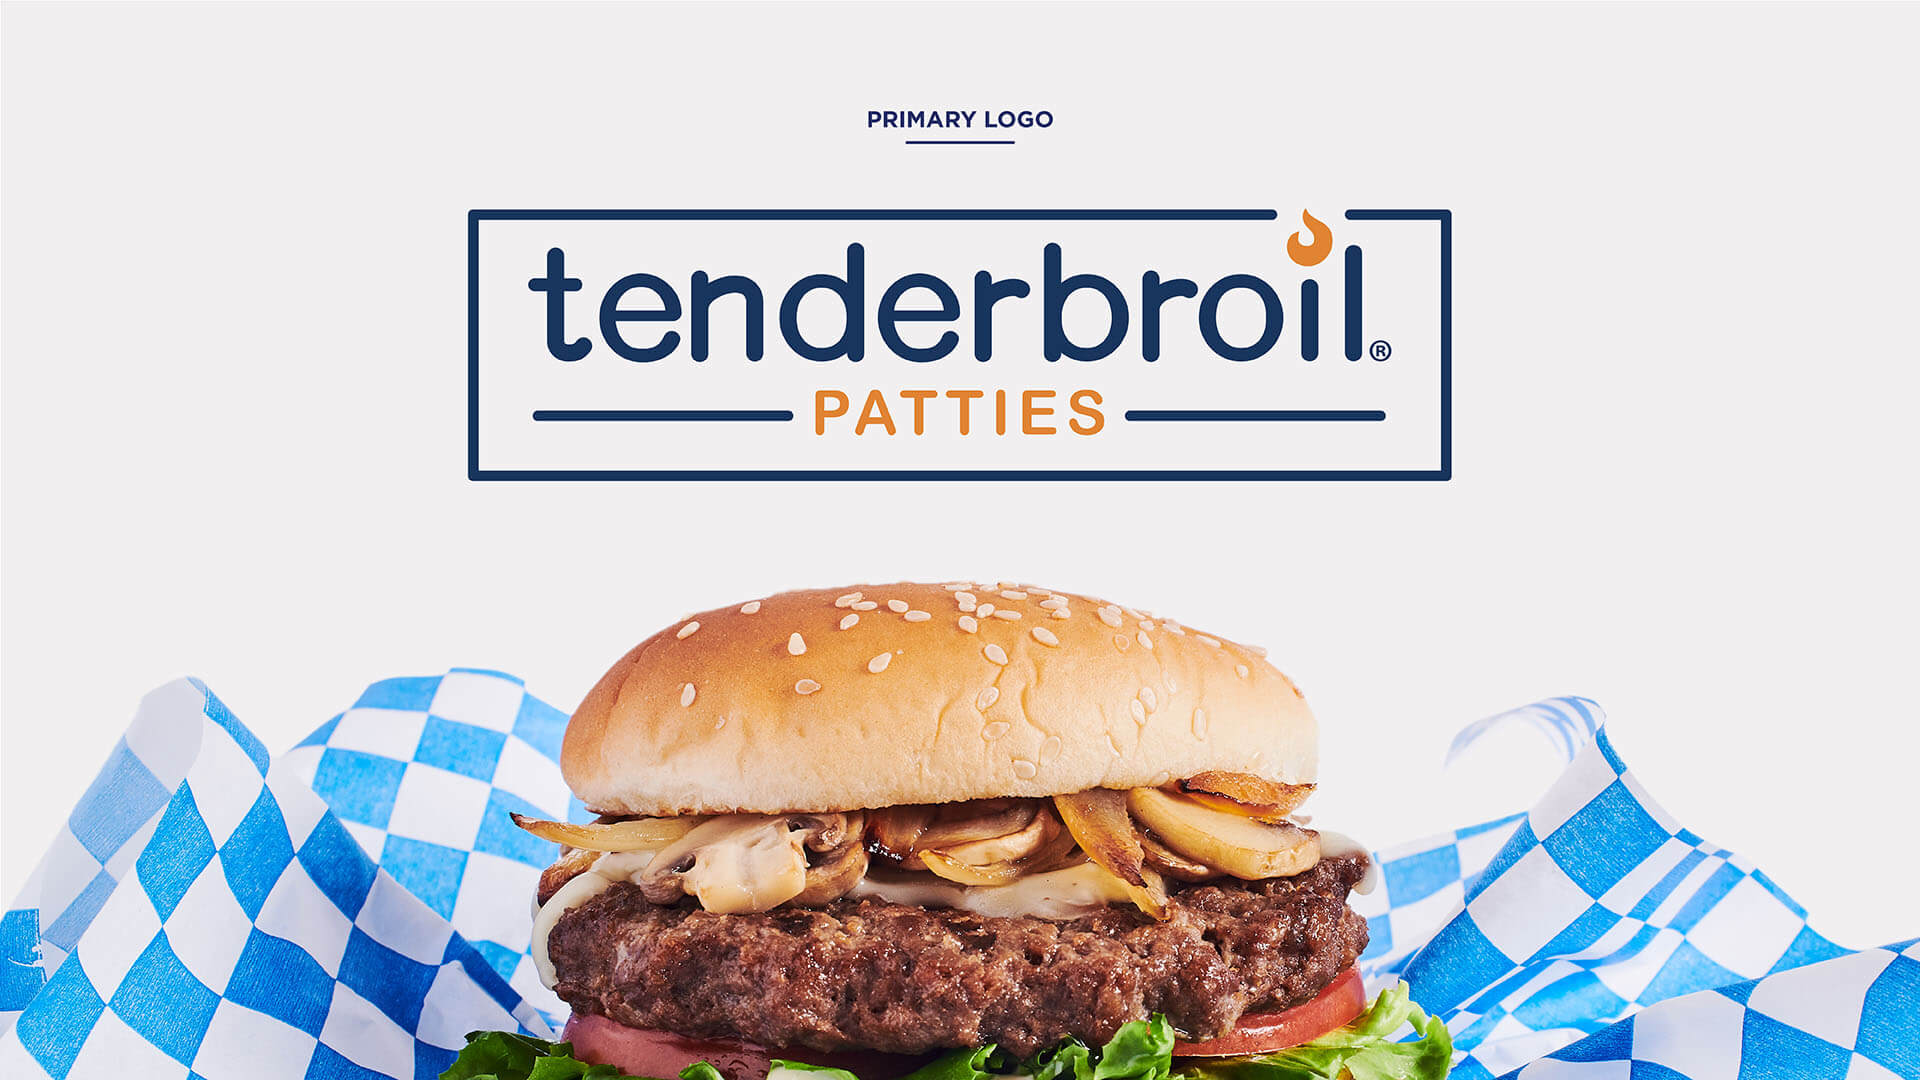 Tenderbroil® Patties Primary Logo & Mushroom Onion Hamburger